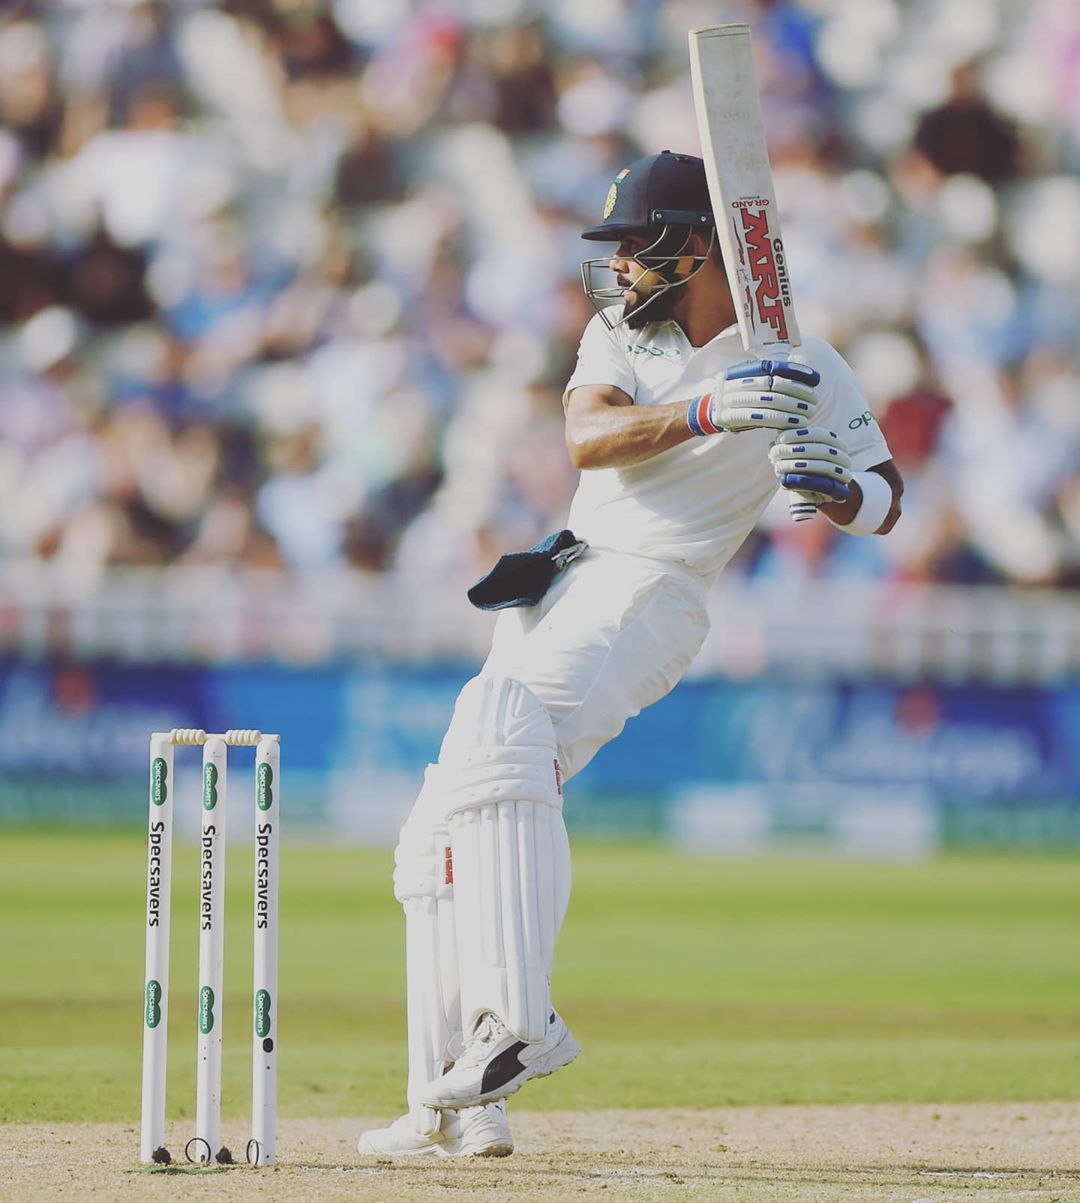  विराट कोहली भारत की ओर से सबसे ज्यादा दोहरा शतक जमाने वाले बल्लेबाज हैं. कोहली ने अबतक 7 बार दोहरा शतक लगाया है. हालांकि वनडे में उनके बल्ले से एक भी दोहरा शतक नहीं निकला है. टेस्ट में सबसे ज्यादा दोहरा शतक जमाने का रिकॉर्ड डॉन ब्रैडमैन के नाम है. ब्रैडमैन ने 12 बार टेस्ट में दोहरा शतक जमाने में सफल रहे थे. (@imviratkohli)